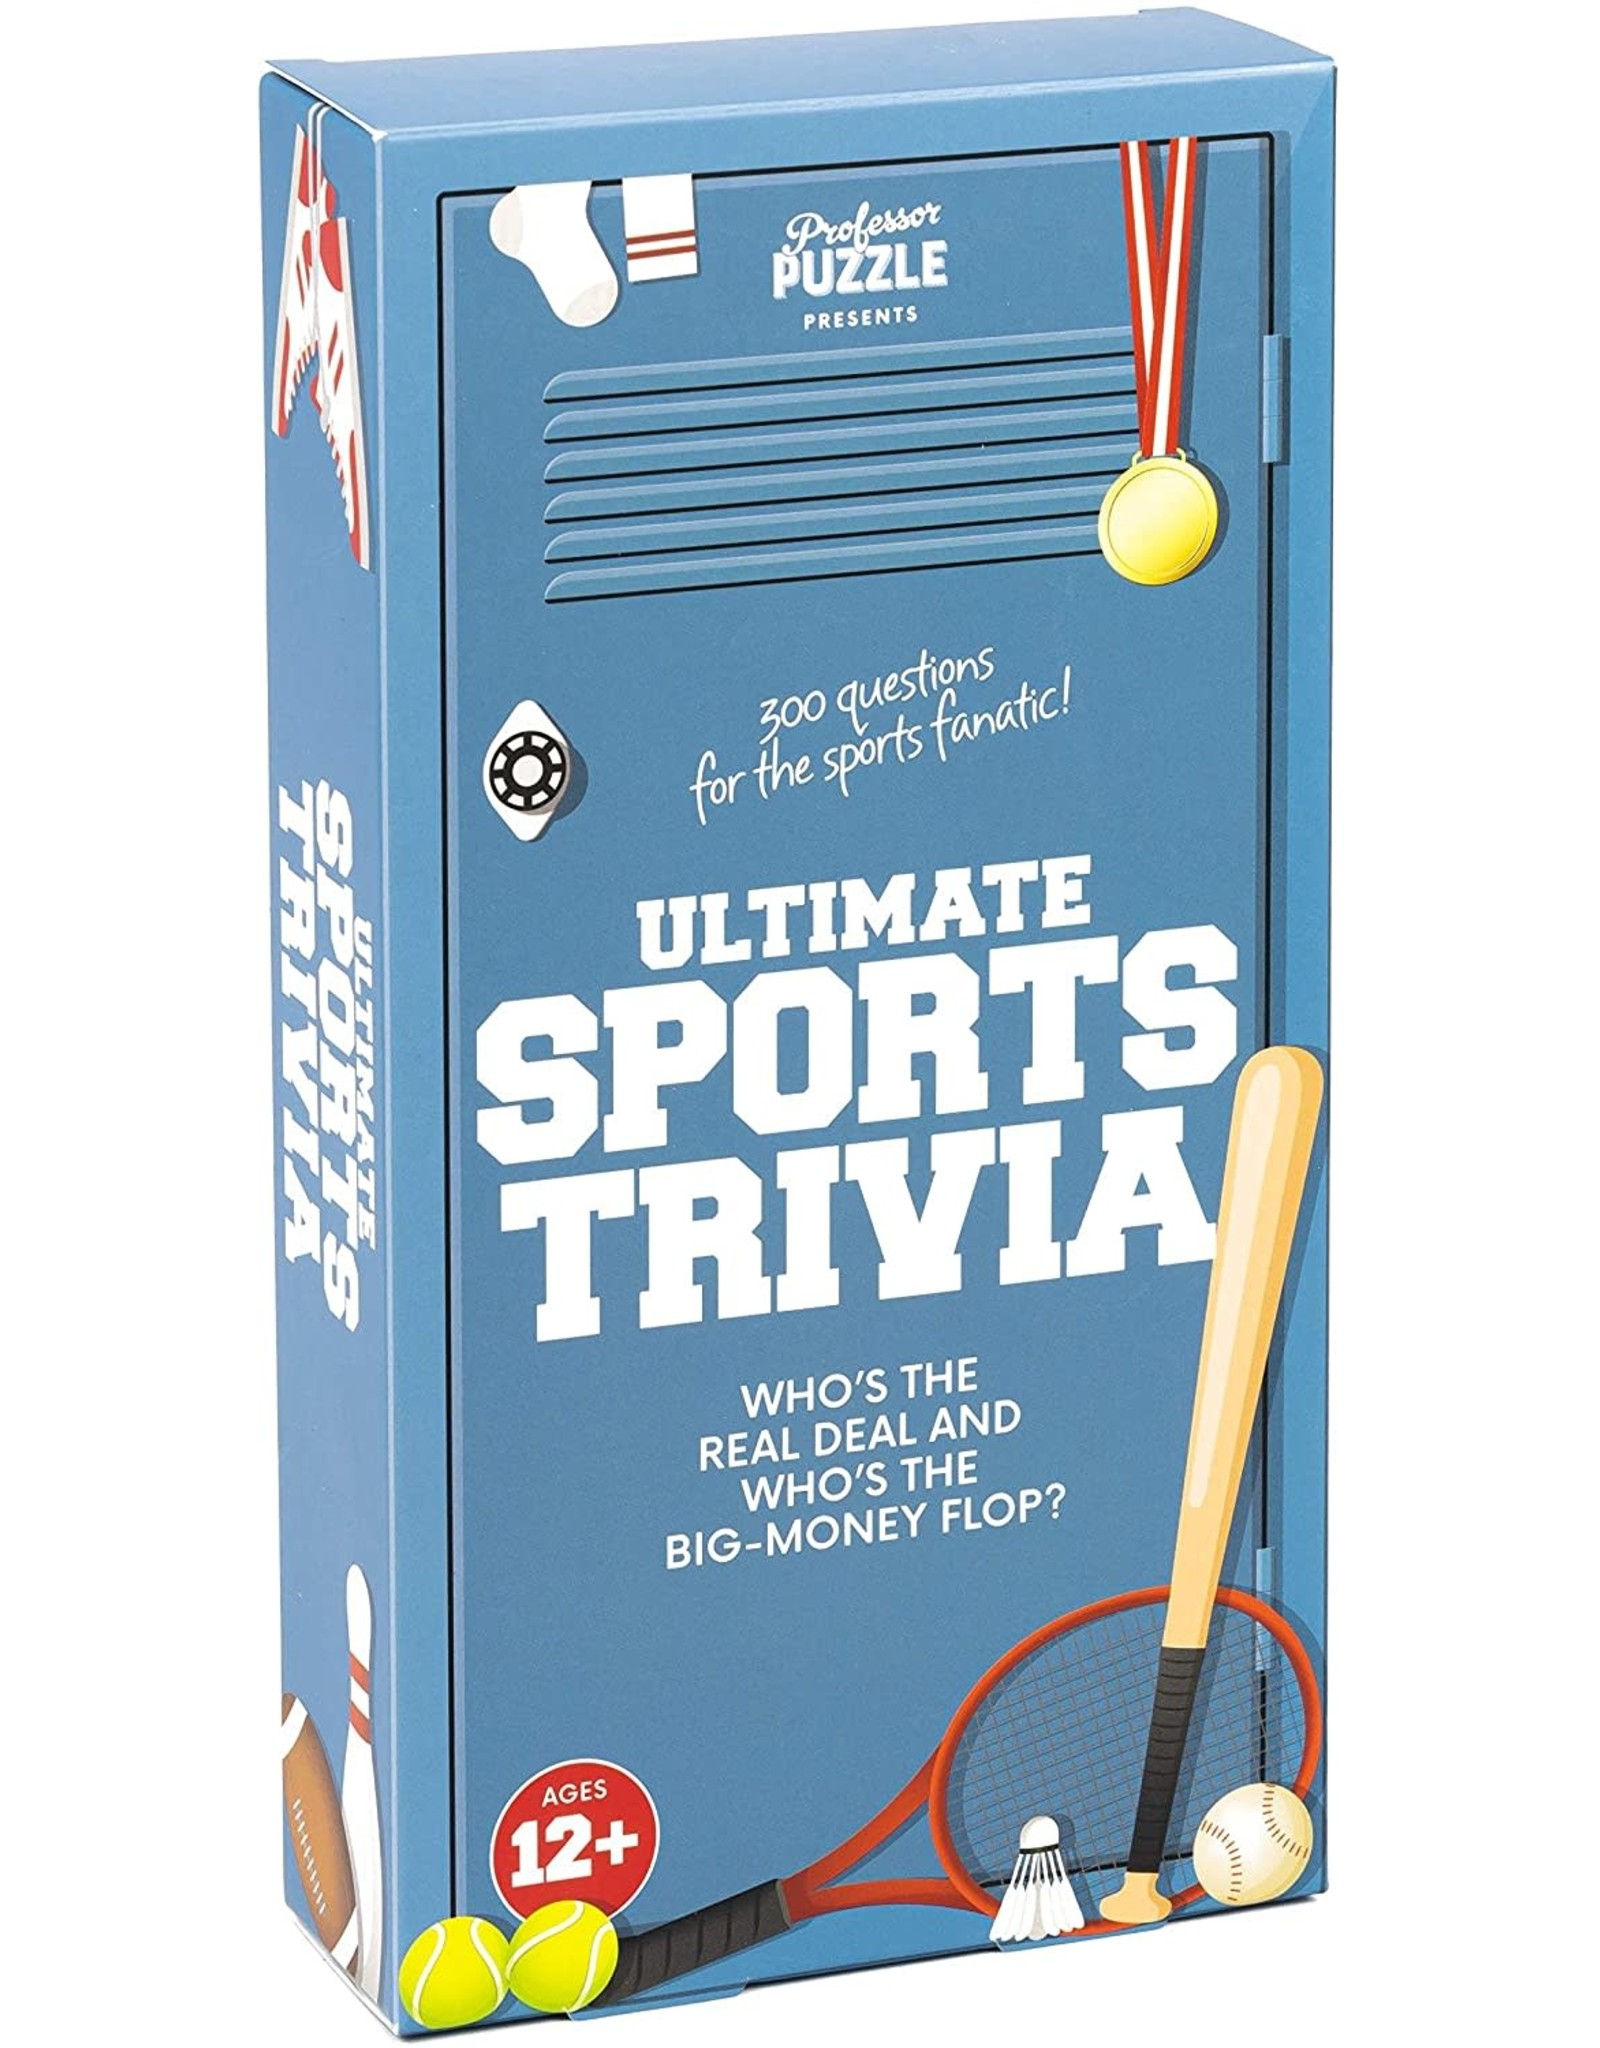 Professor Puzzle Ultimate Sports Trivia